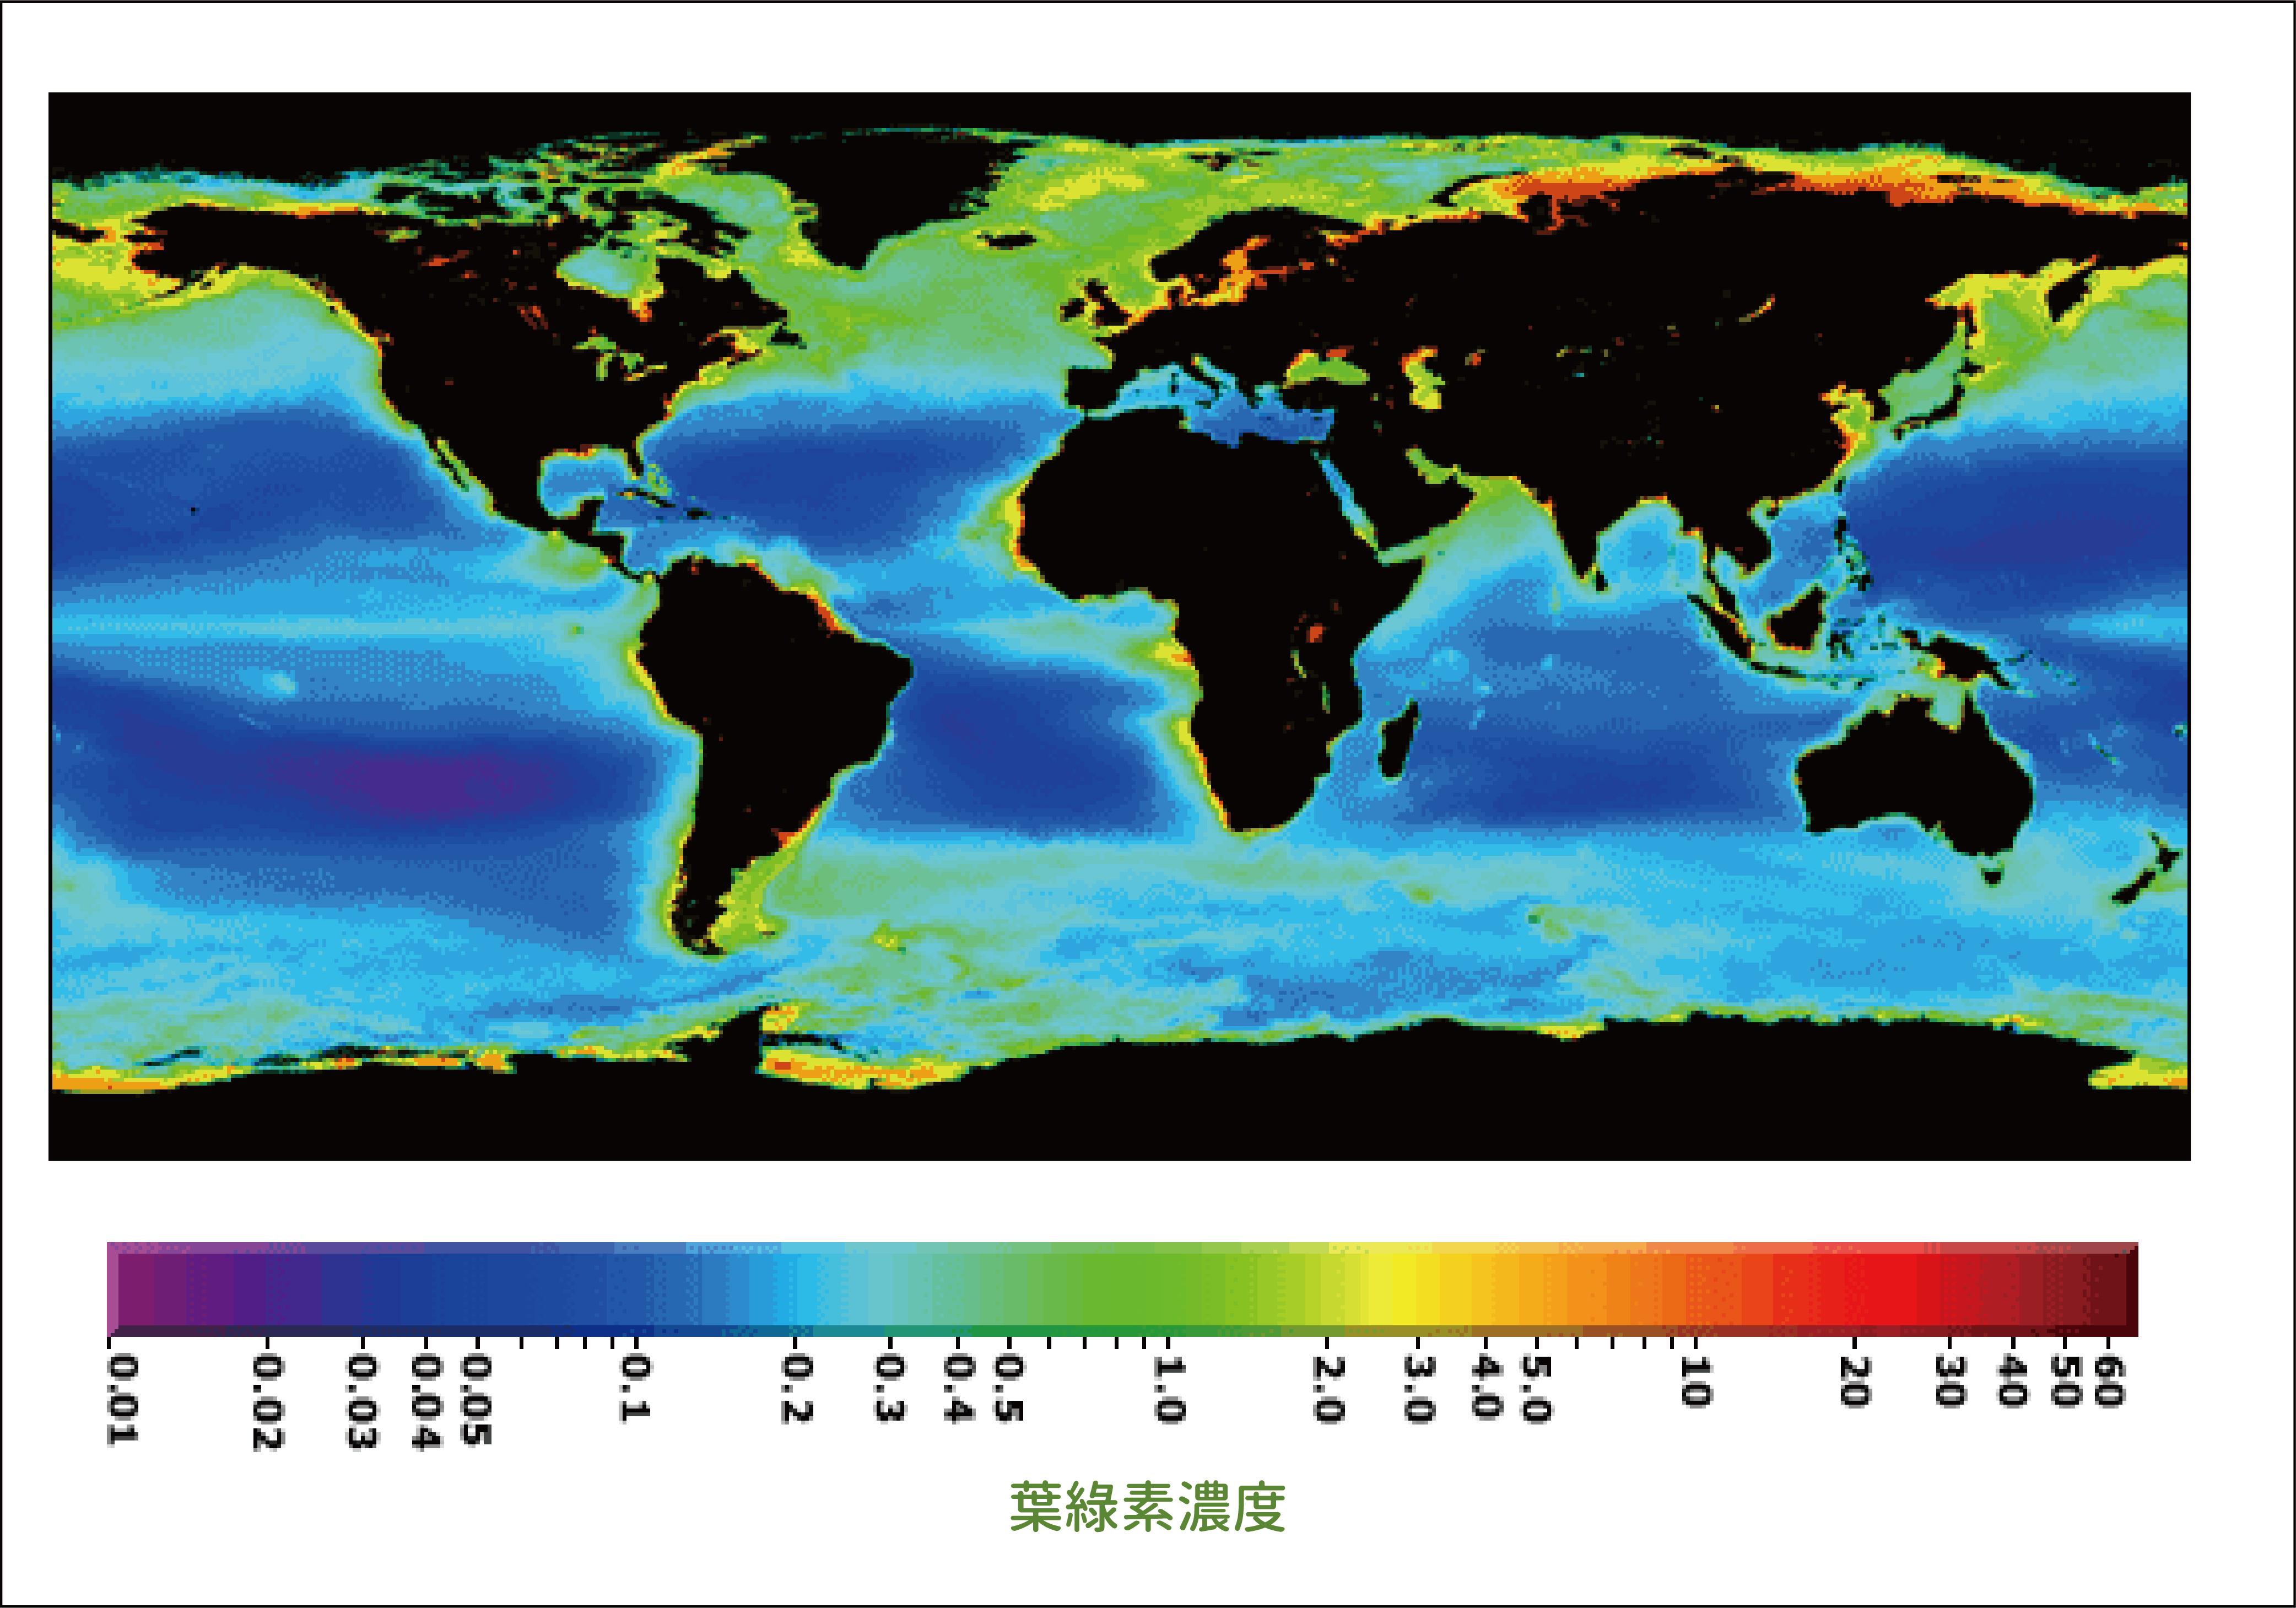 全球海洋生物量的分布圖，色溫越高代表海水中浮游植物生物量 (biomass) ──葉綠素愈高。因為營養物質供應相對較多，高緯度、邊緣海、以及湧升流海域的生物量特別高。 圖片來源│NASA Earth Observatory 圖說重製│張語辰